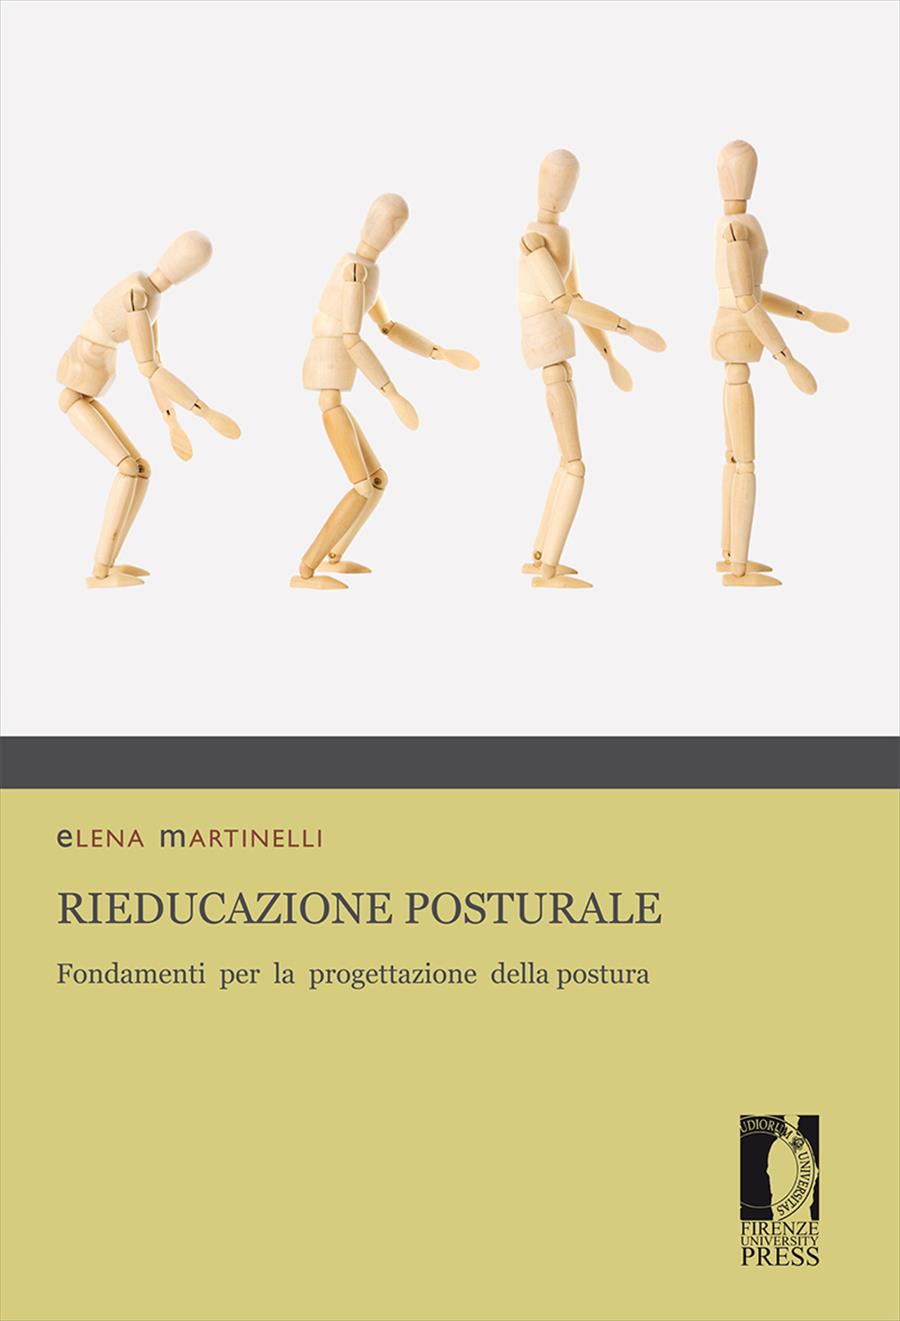 Rieducazione posturale